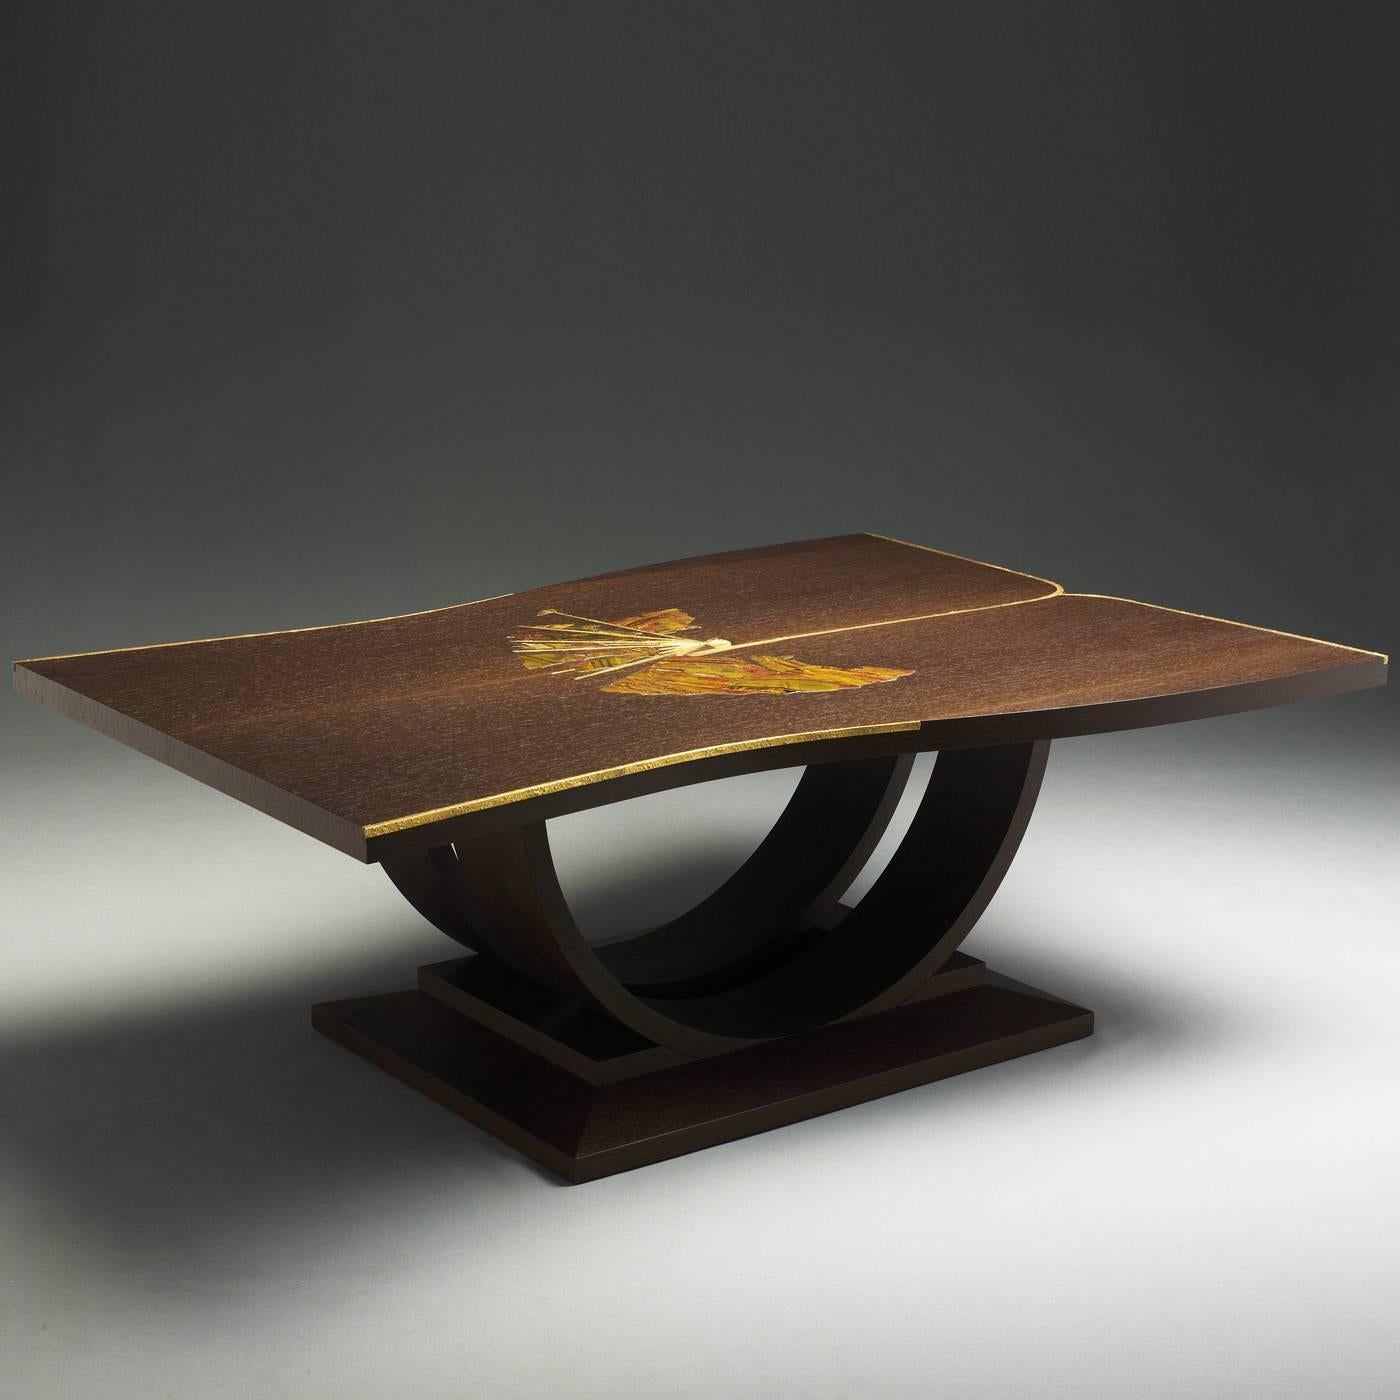 Cette table élégante, inspirée d'un kimono ancien, est fabriquée en bois de wengé et son plateau est décoré d'un éventail en pierre. Les baguettes soulignant l'éventail et les bords de la table sont en laiton avec une finition peau d'orange. Design